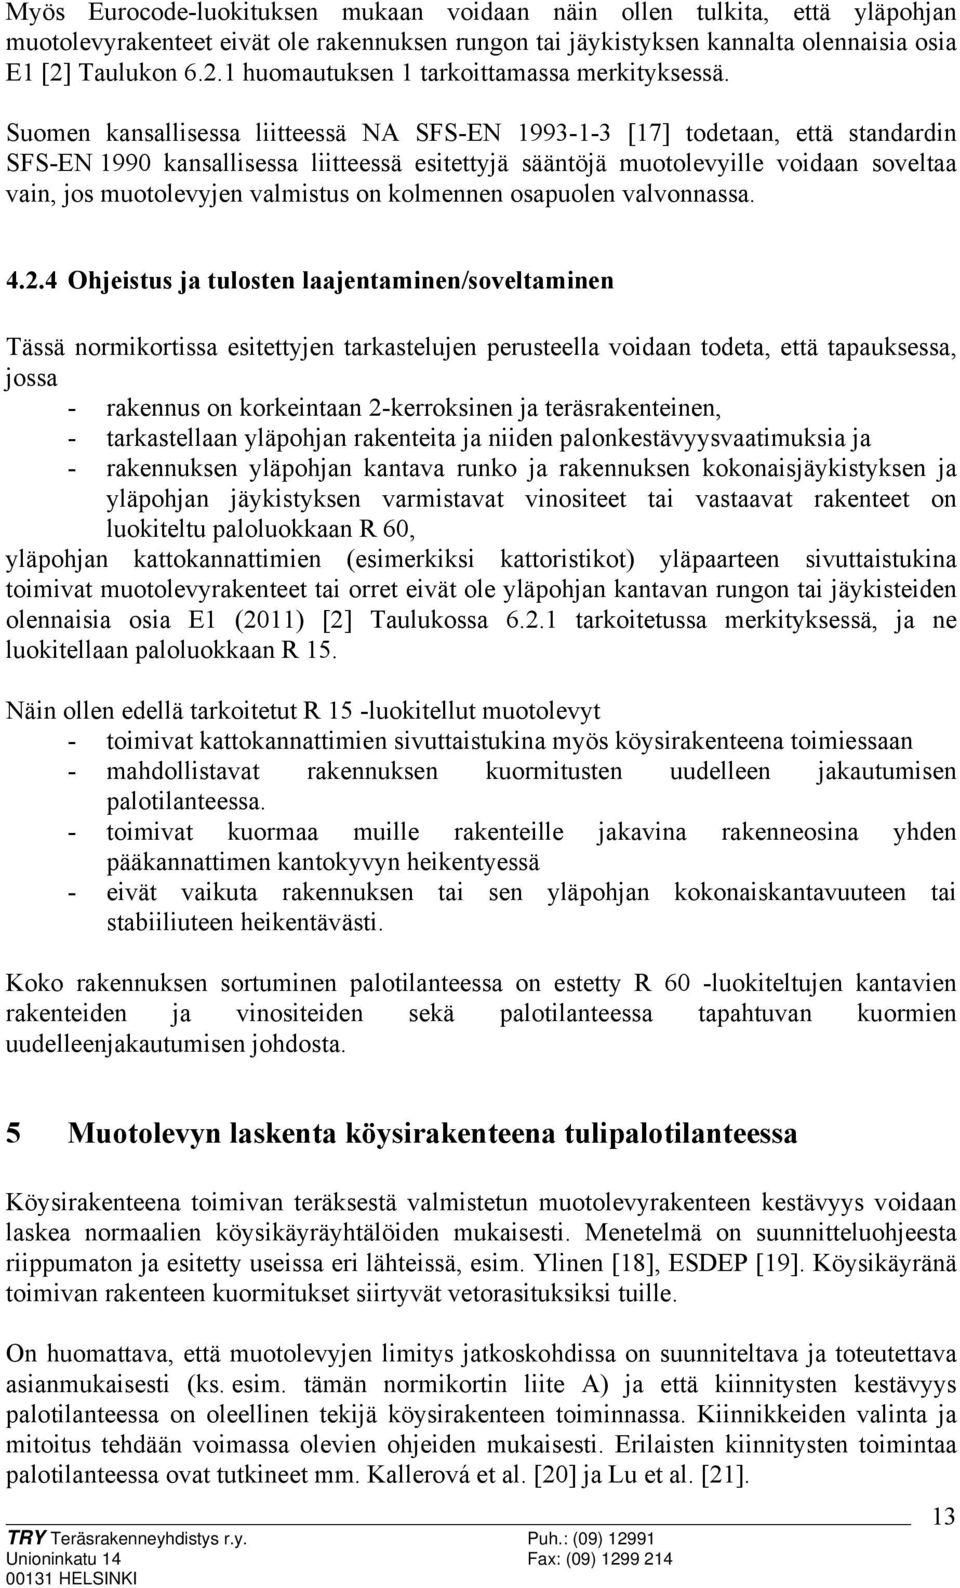 Suomen kansallisessa liitteessä NA SFS-EN 1993-1-3 [17] todetaan, että standardin SFS-EN 1990 kansallisessa liitteessä esitettyjä sääntöjä muotolevyille voidaan soveltaa vain, jos muotolevyjen